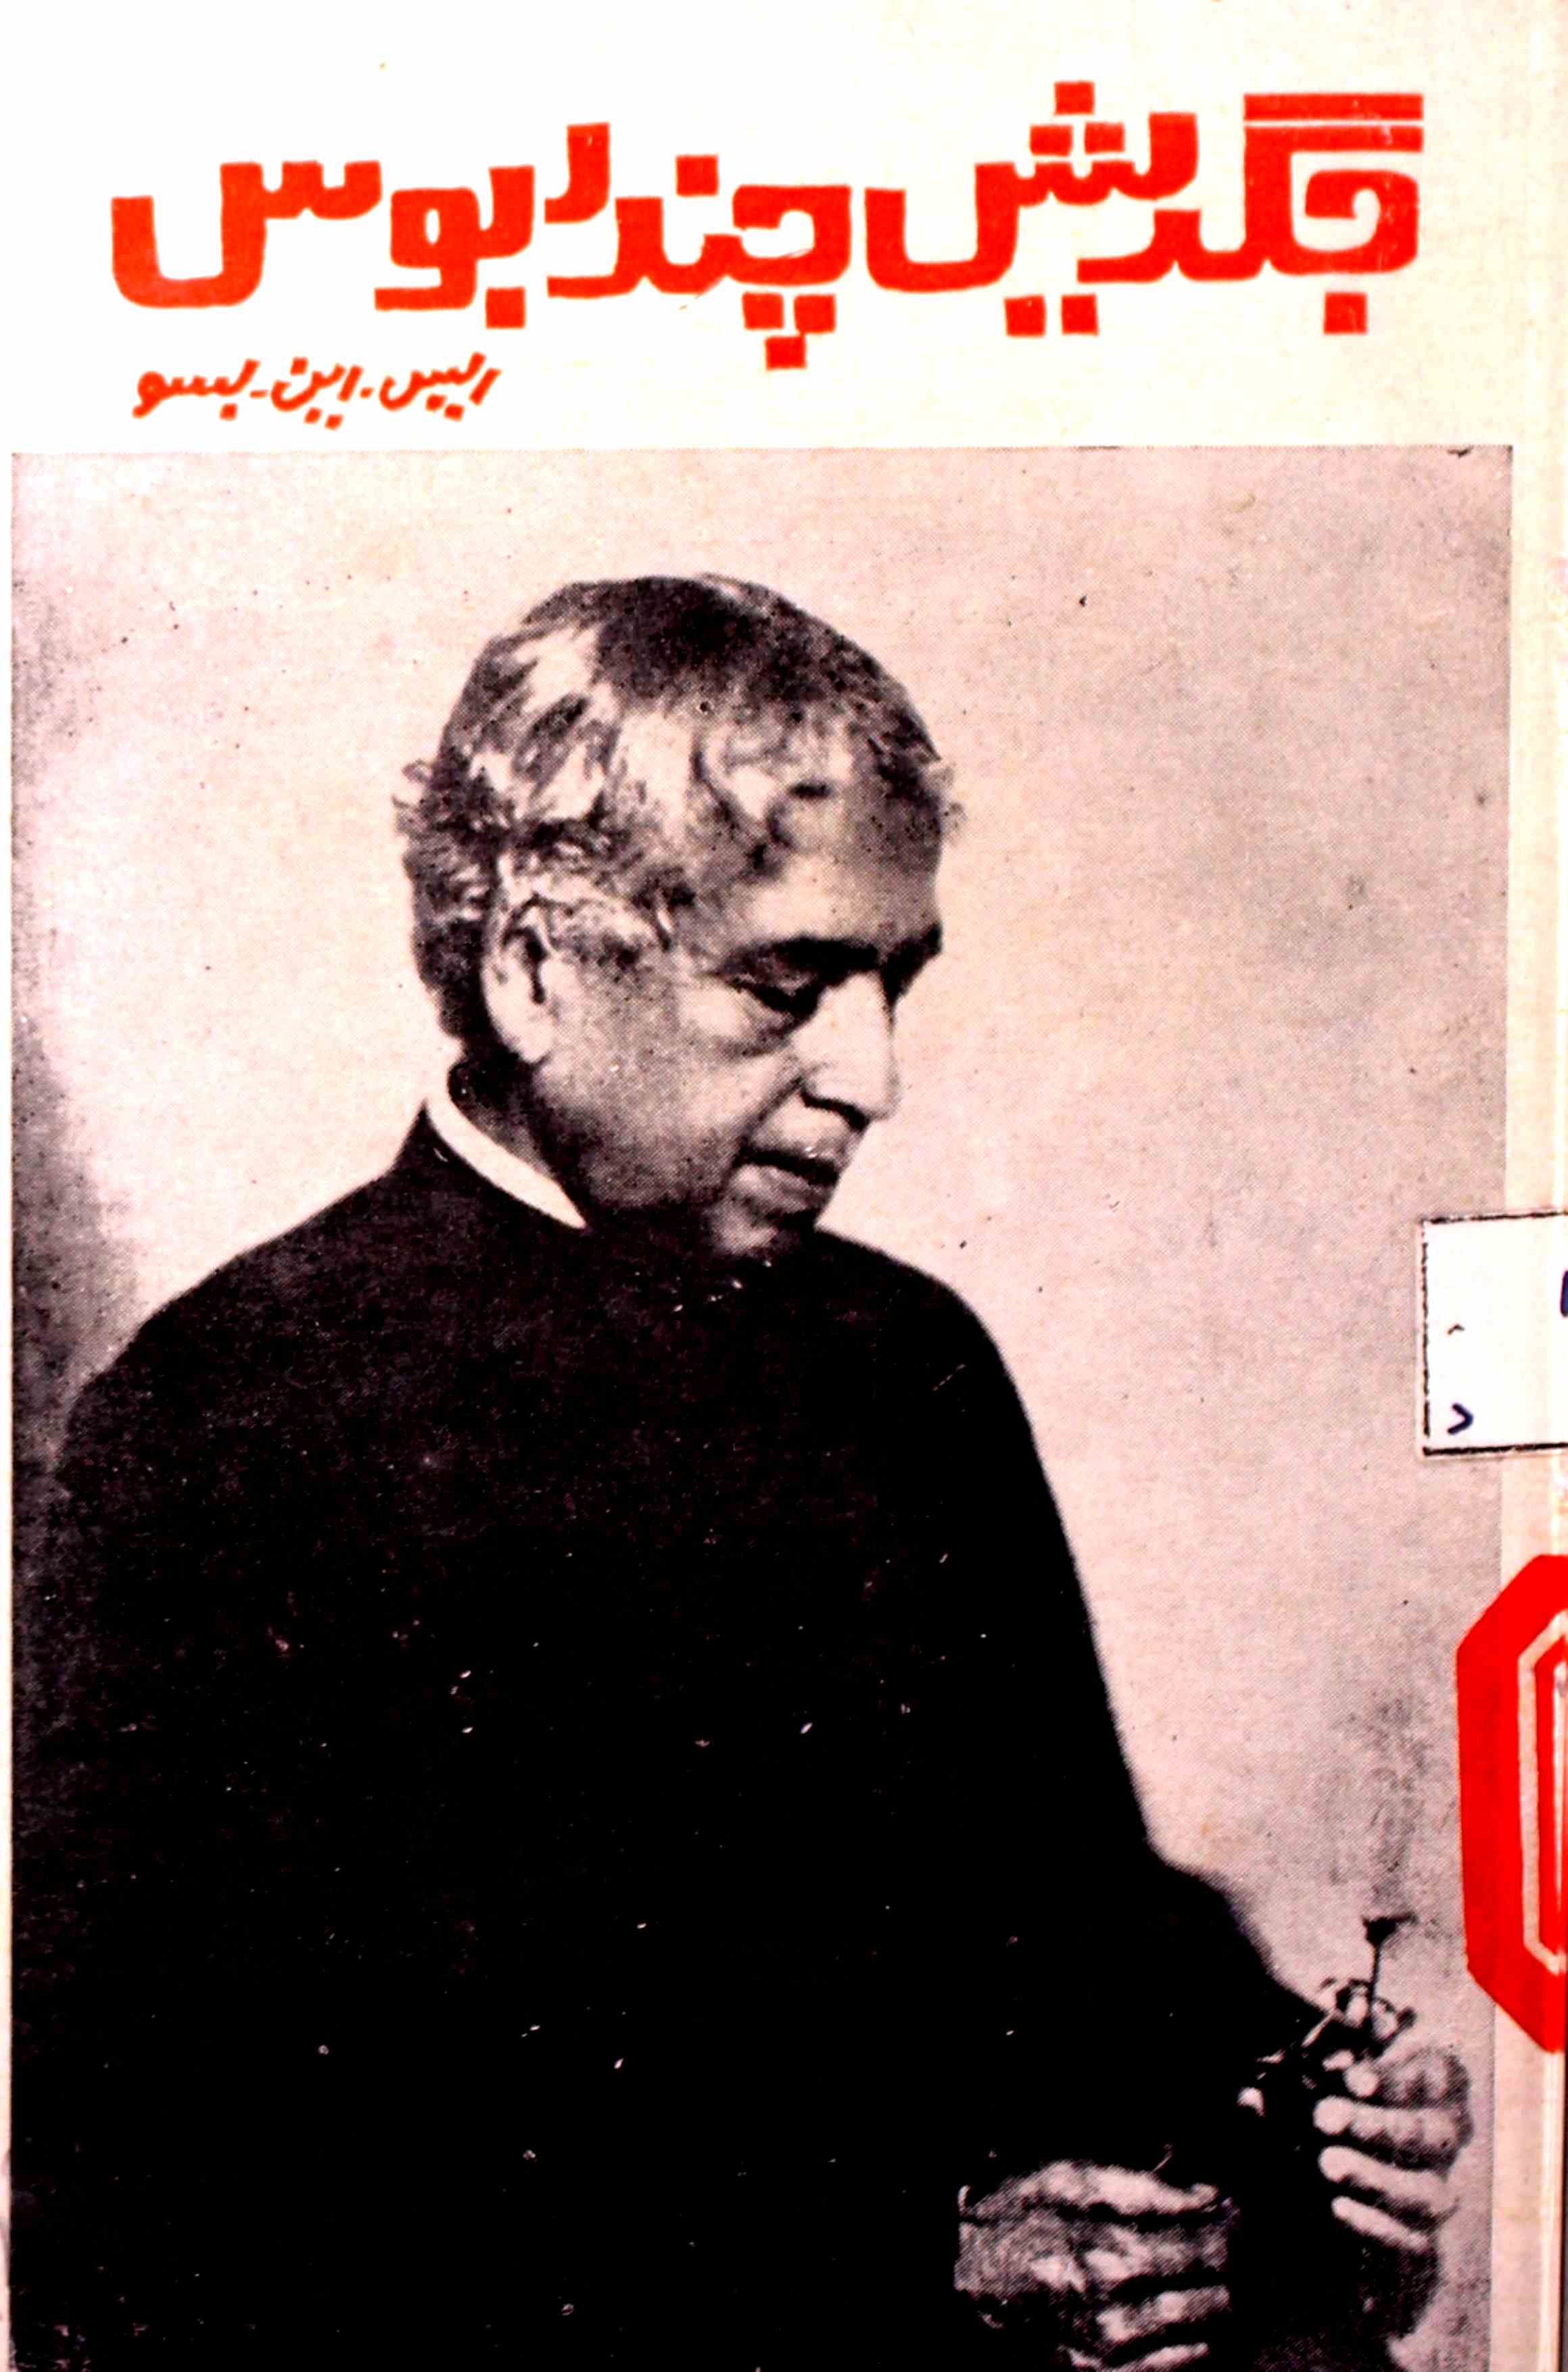 Gagadish Chandra Bose